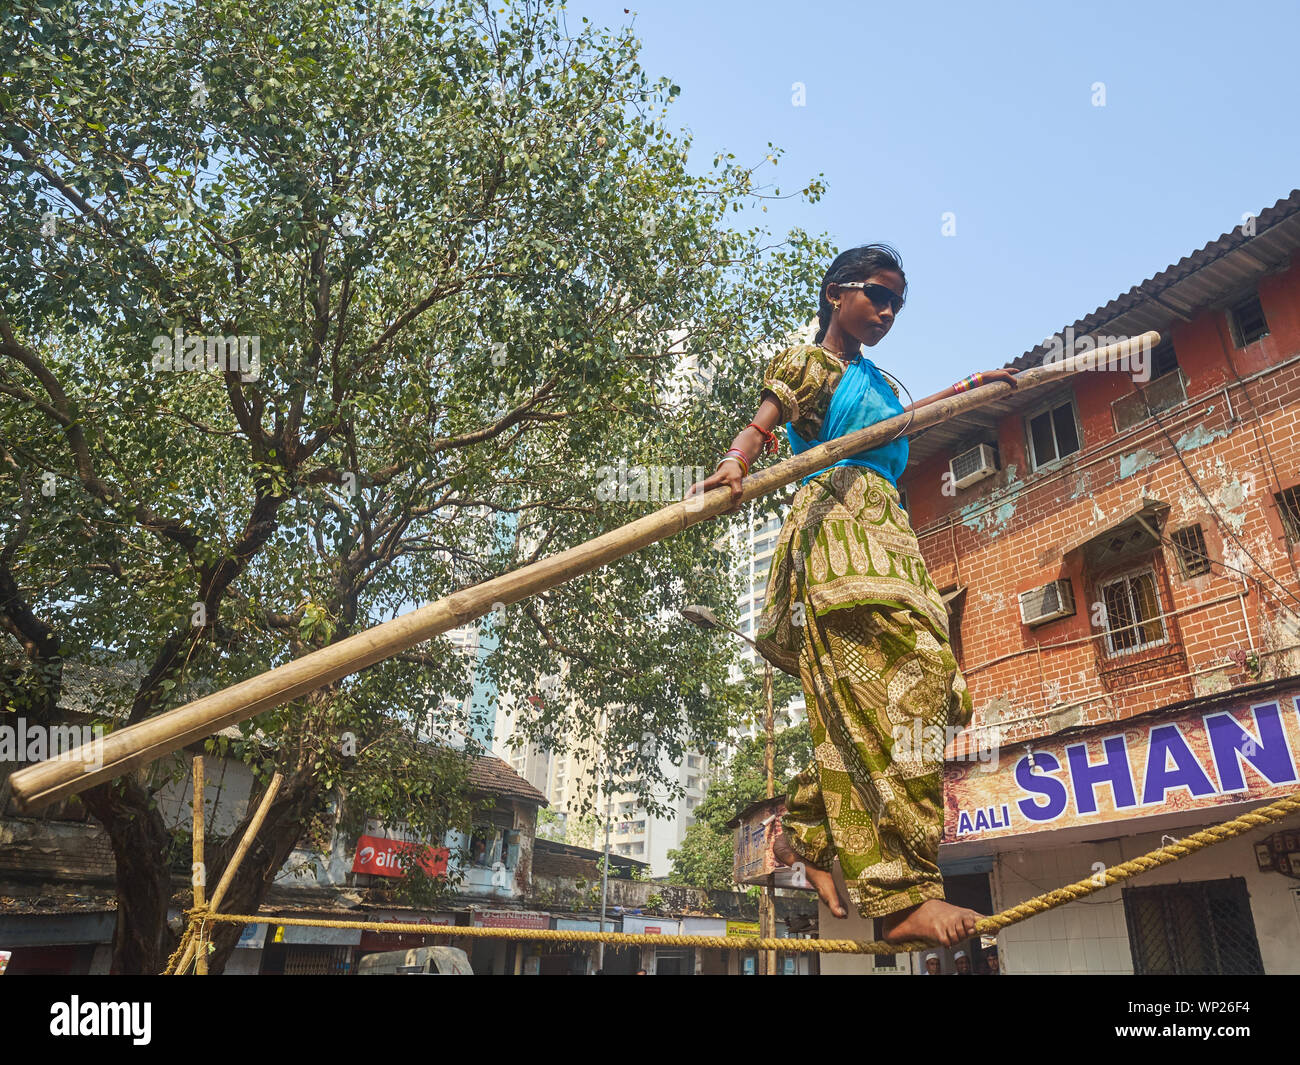 Una joven en Mumbai, India, con espectáculos impenetrable equilibrio sobre una cuerda floja, en una denominada "tamasha' o improvisados circo callejero Foto de stock